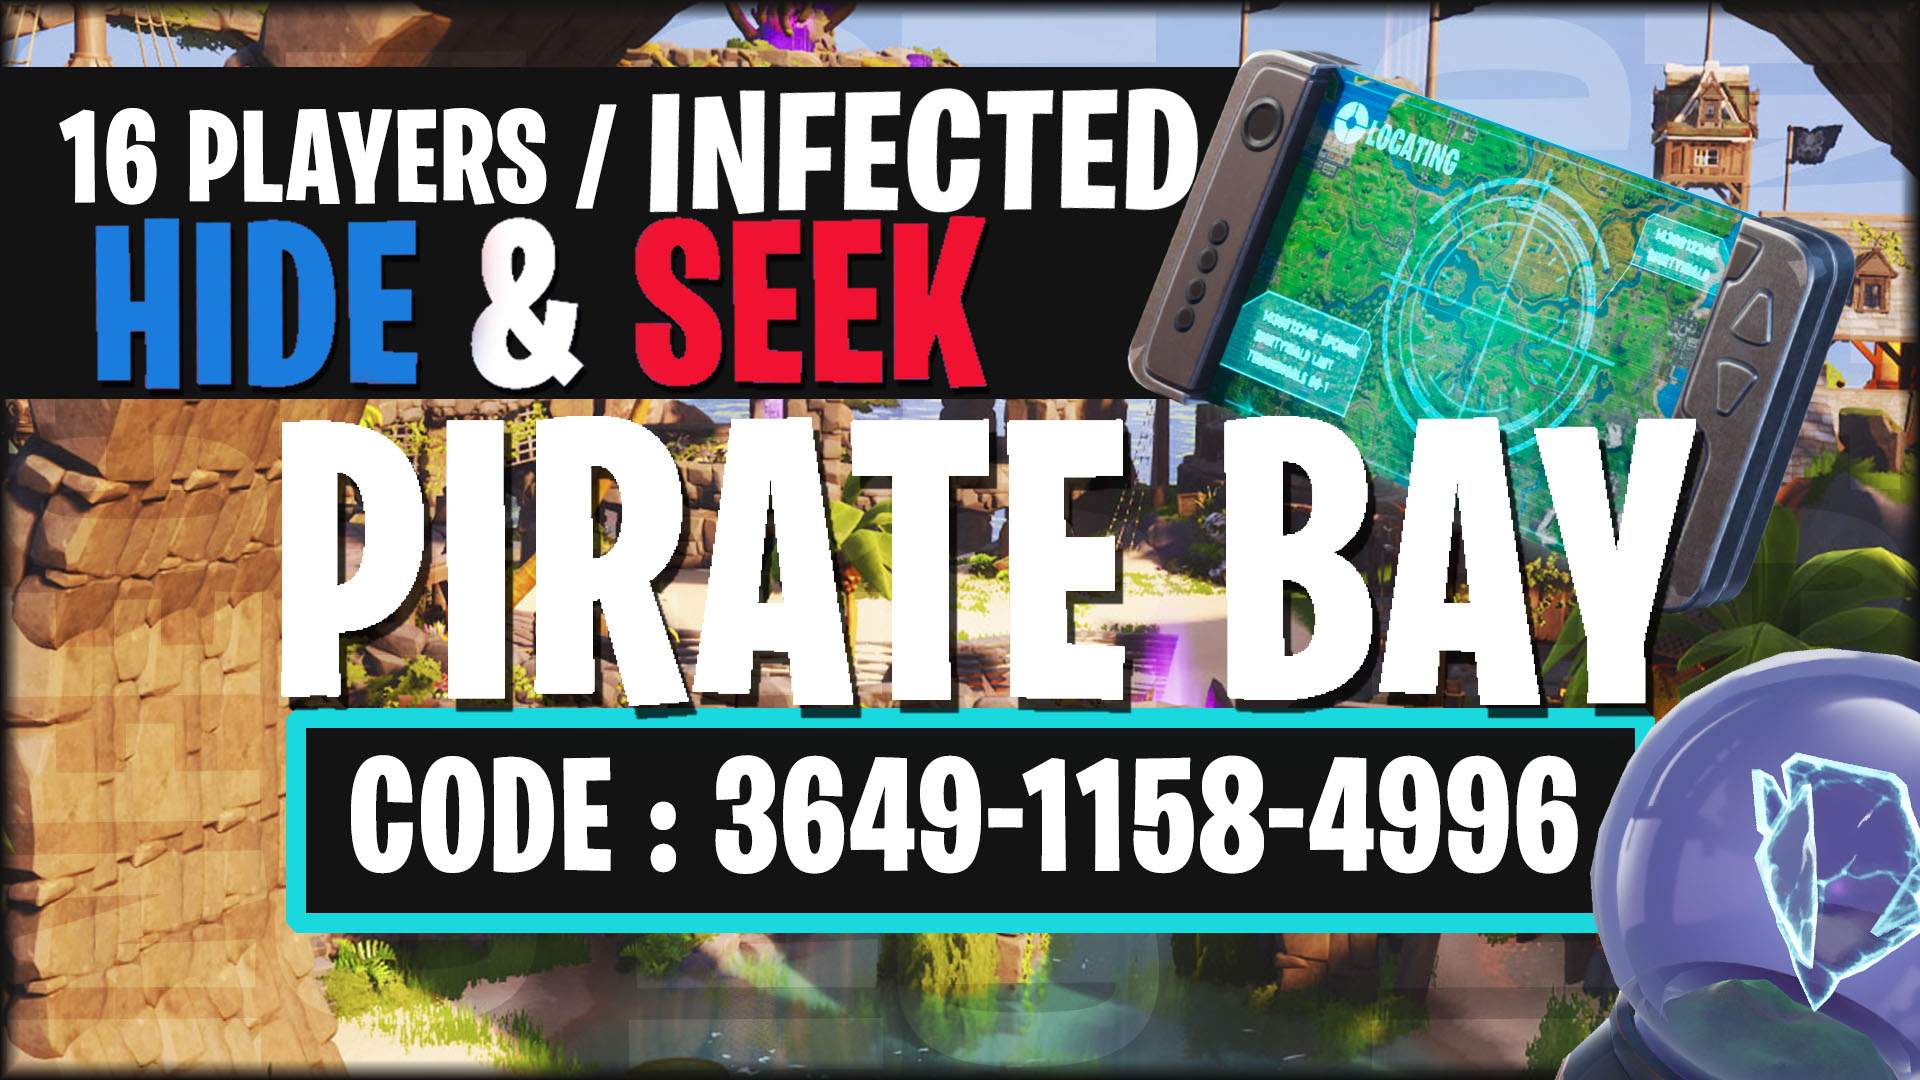 INFECTED - Hide & Seek - Pirate Bay